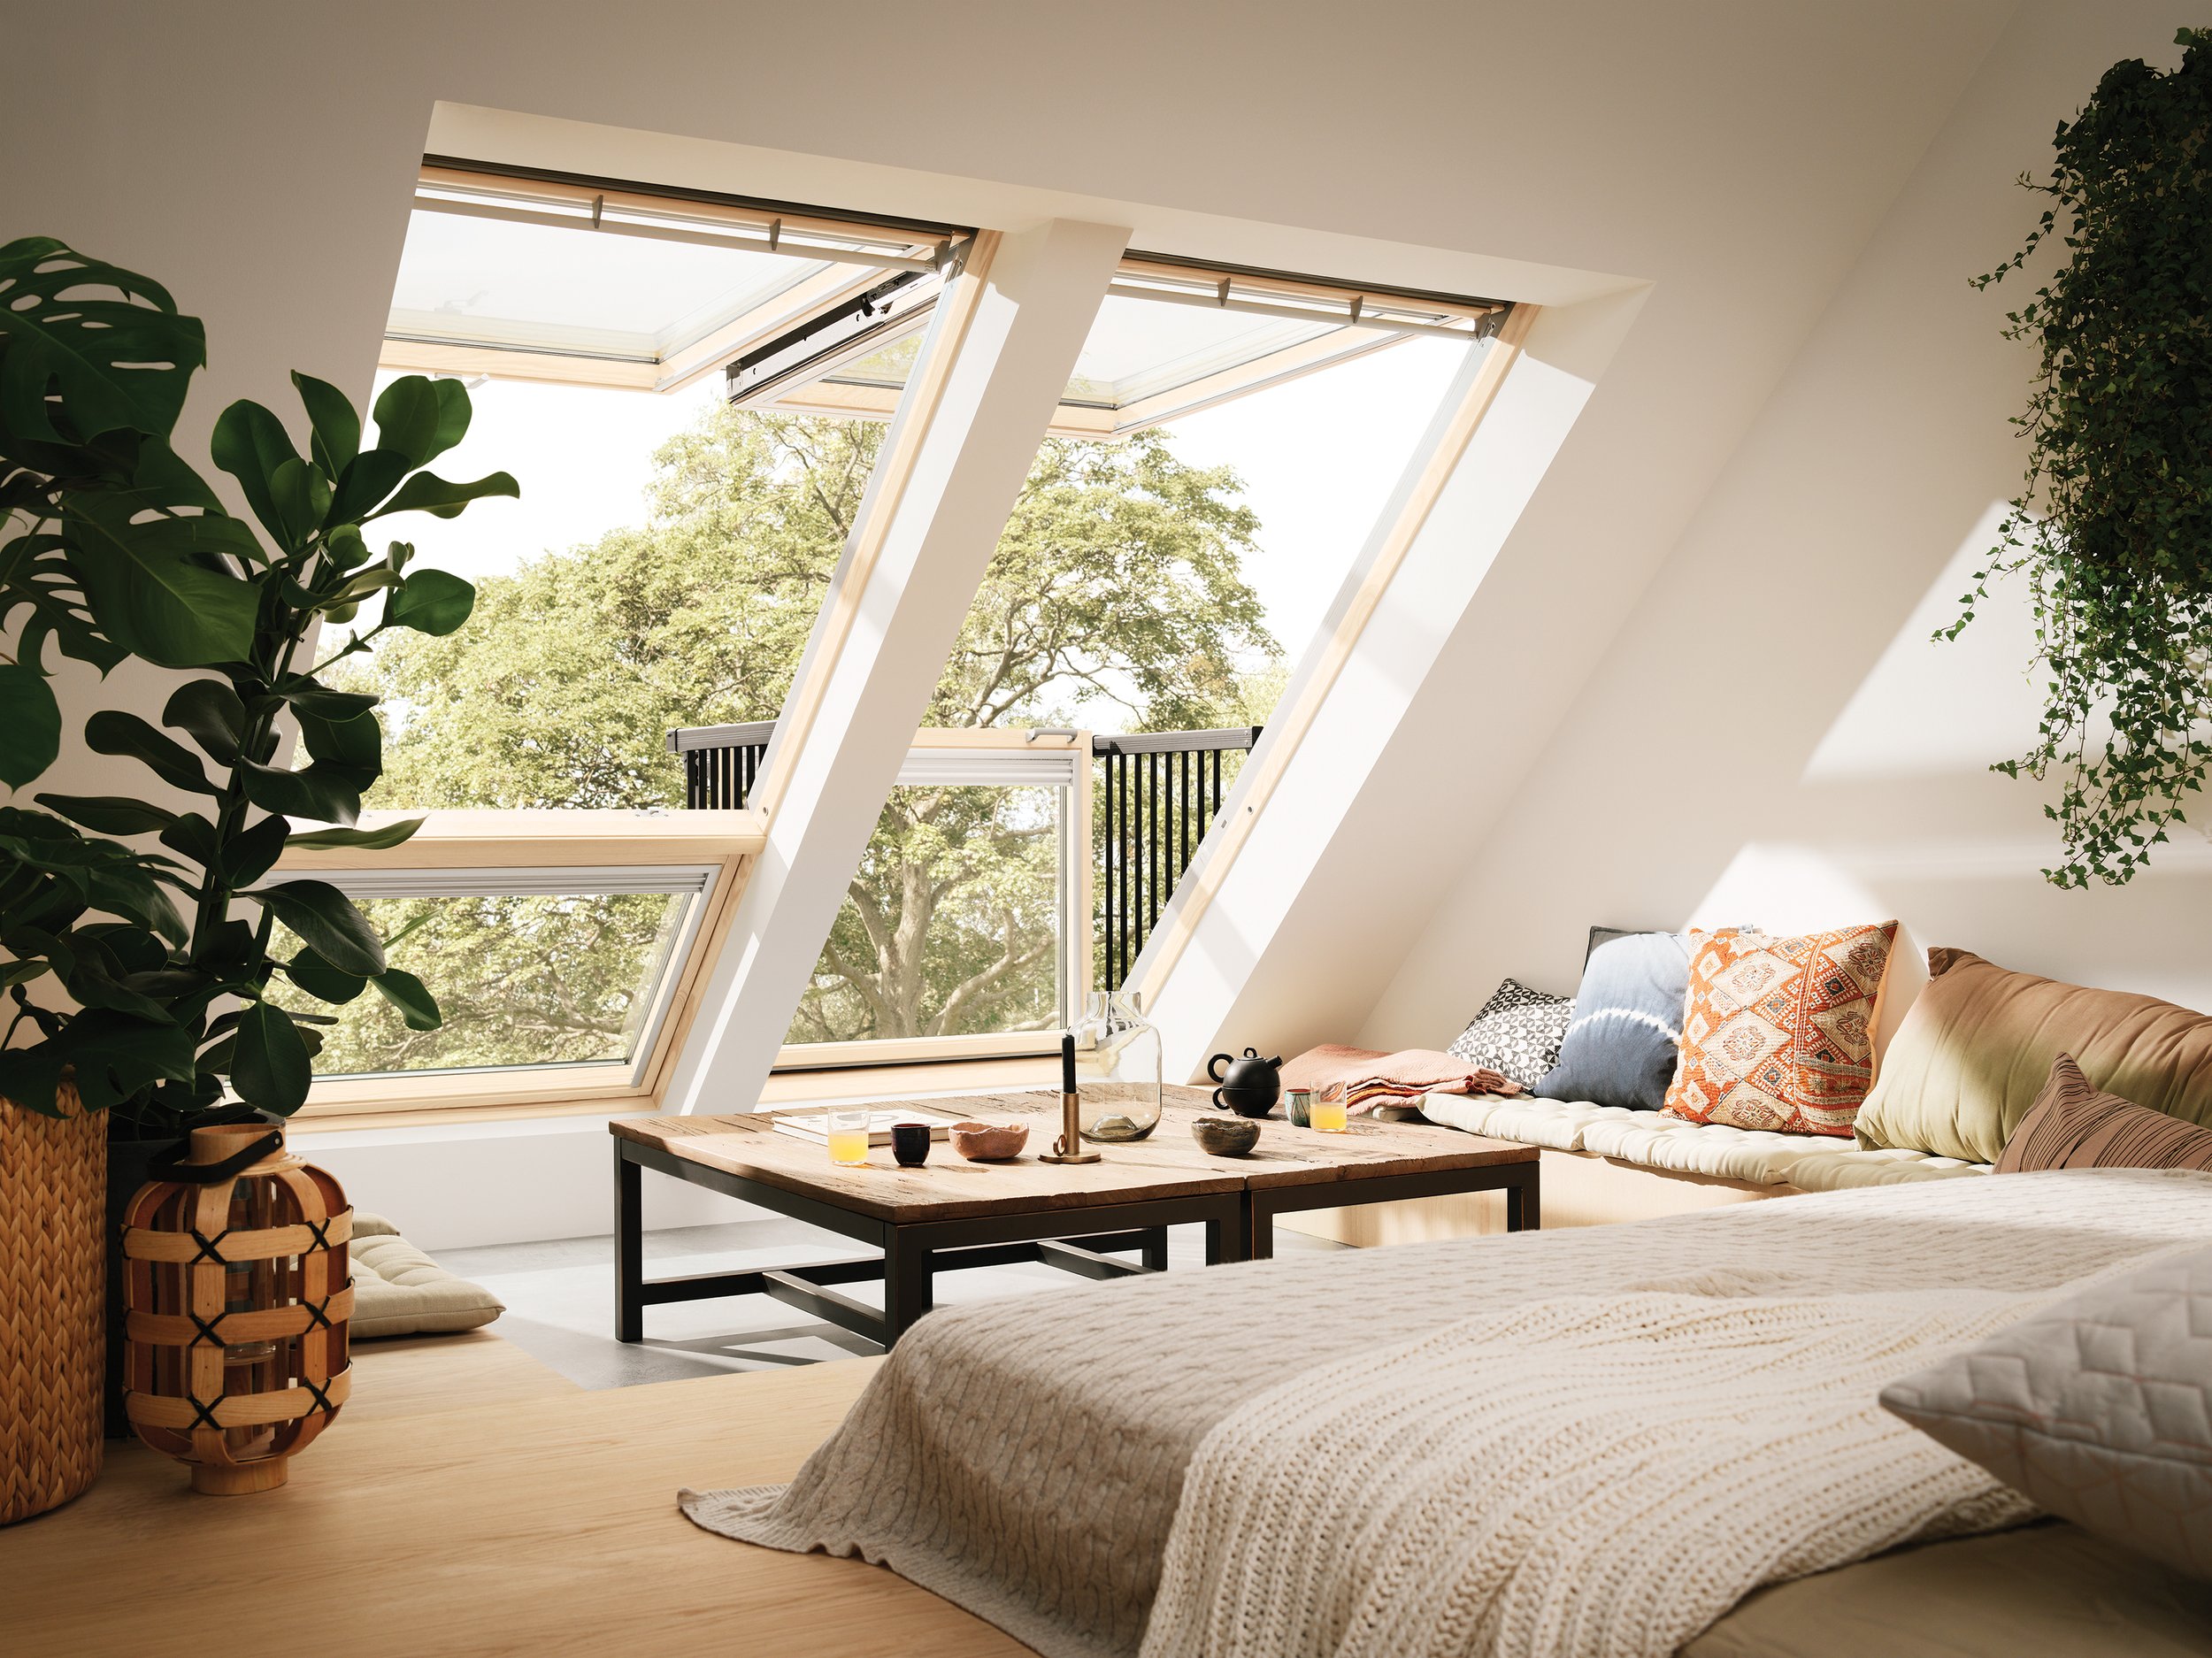 Application-balcony-interior-3854-Roof-Windows-gdl-Bedroom-0621.jpg